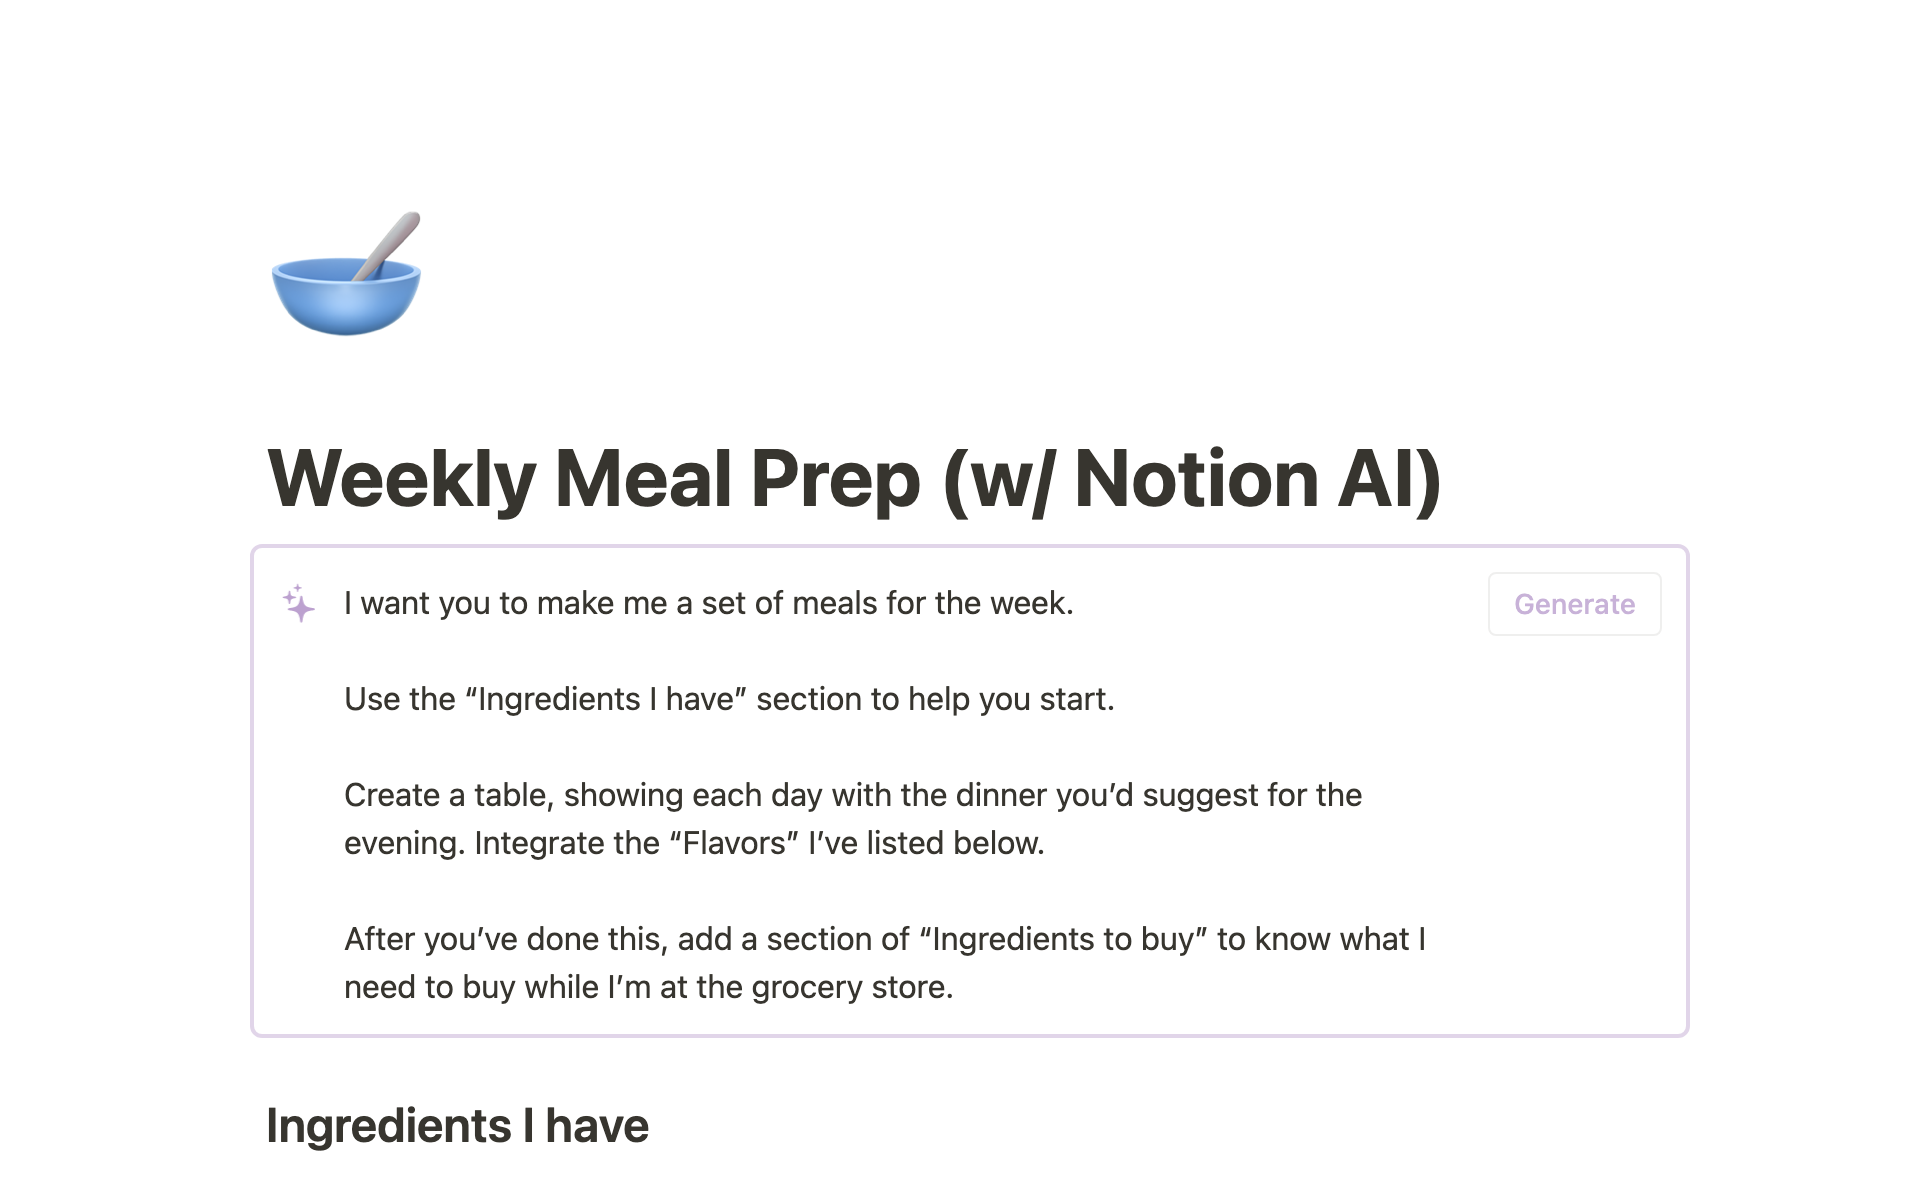 NotionによるNotion AIを活用した学生向けテンプレート7選コレクションのスクリーンショット